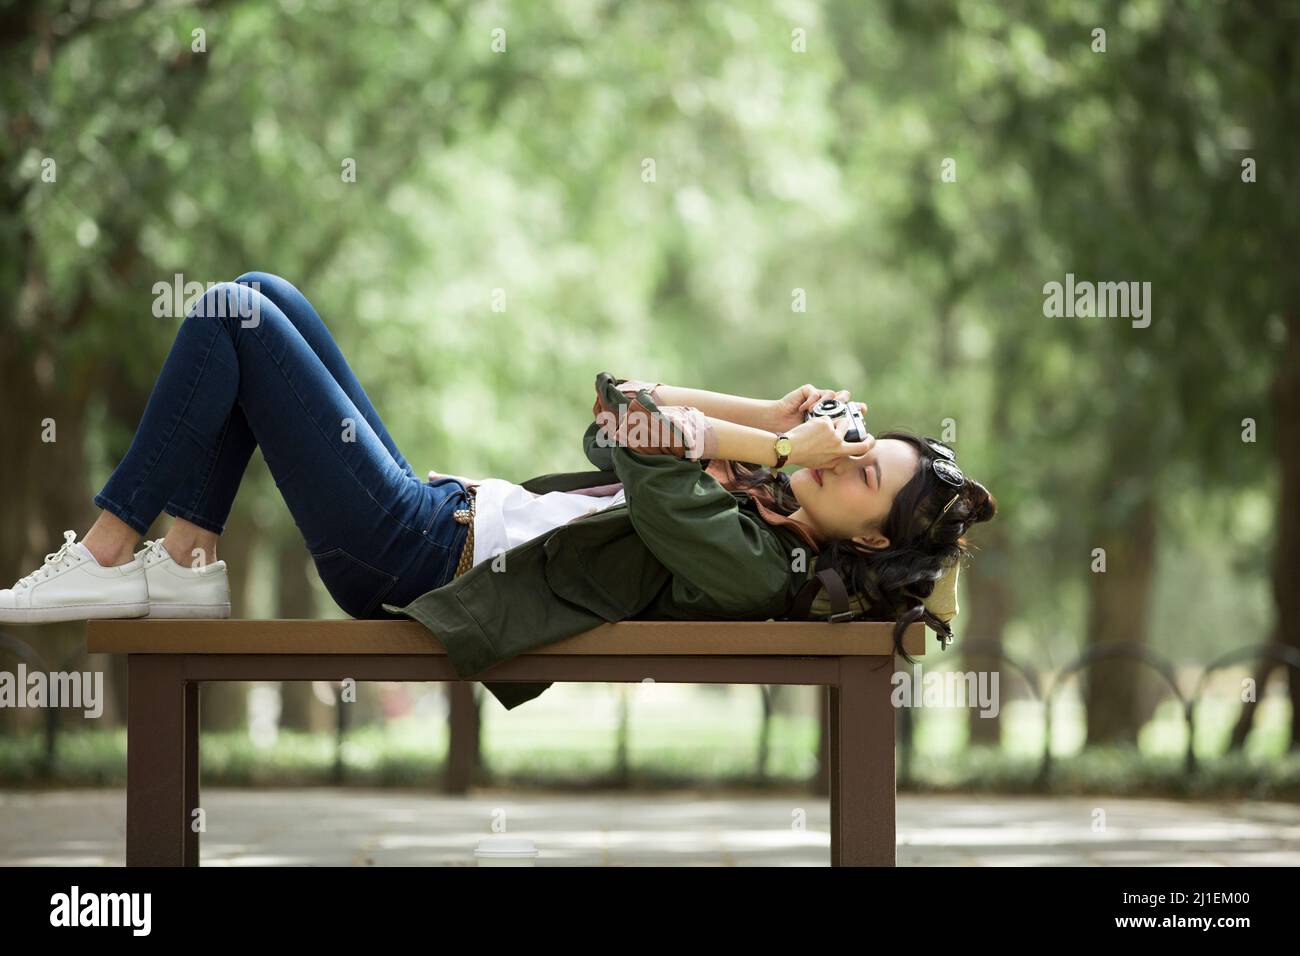 Junge Touristenin auf einer Bank liegend und fotografiert - Stock Photo Stockfoto